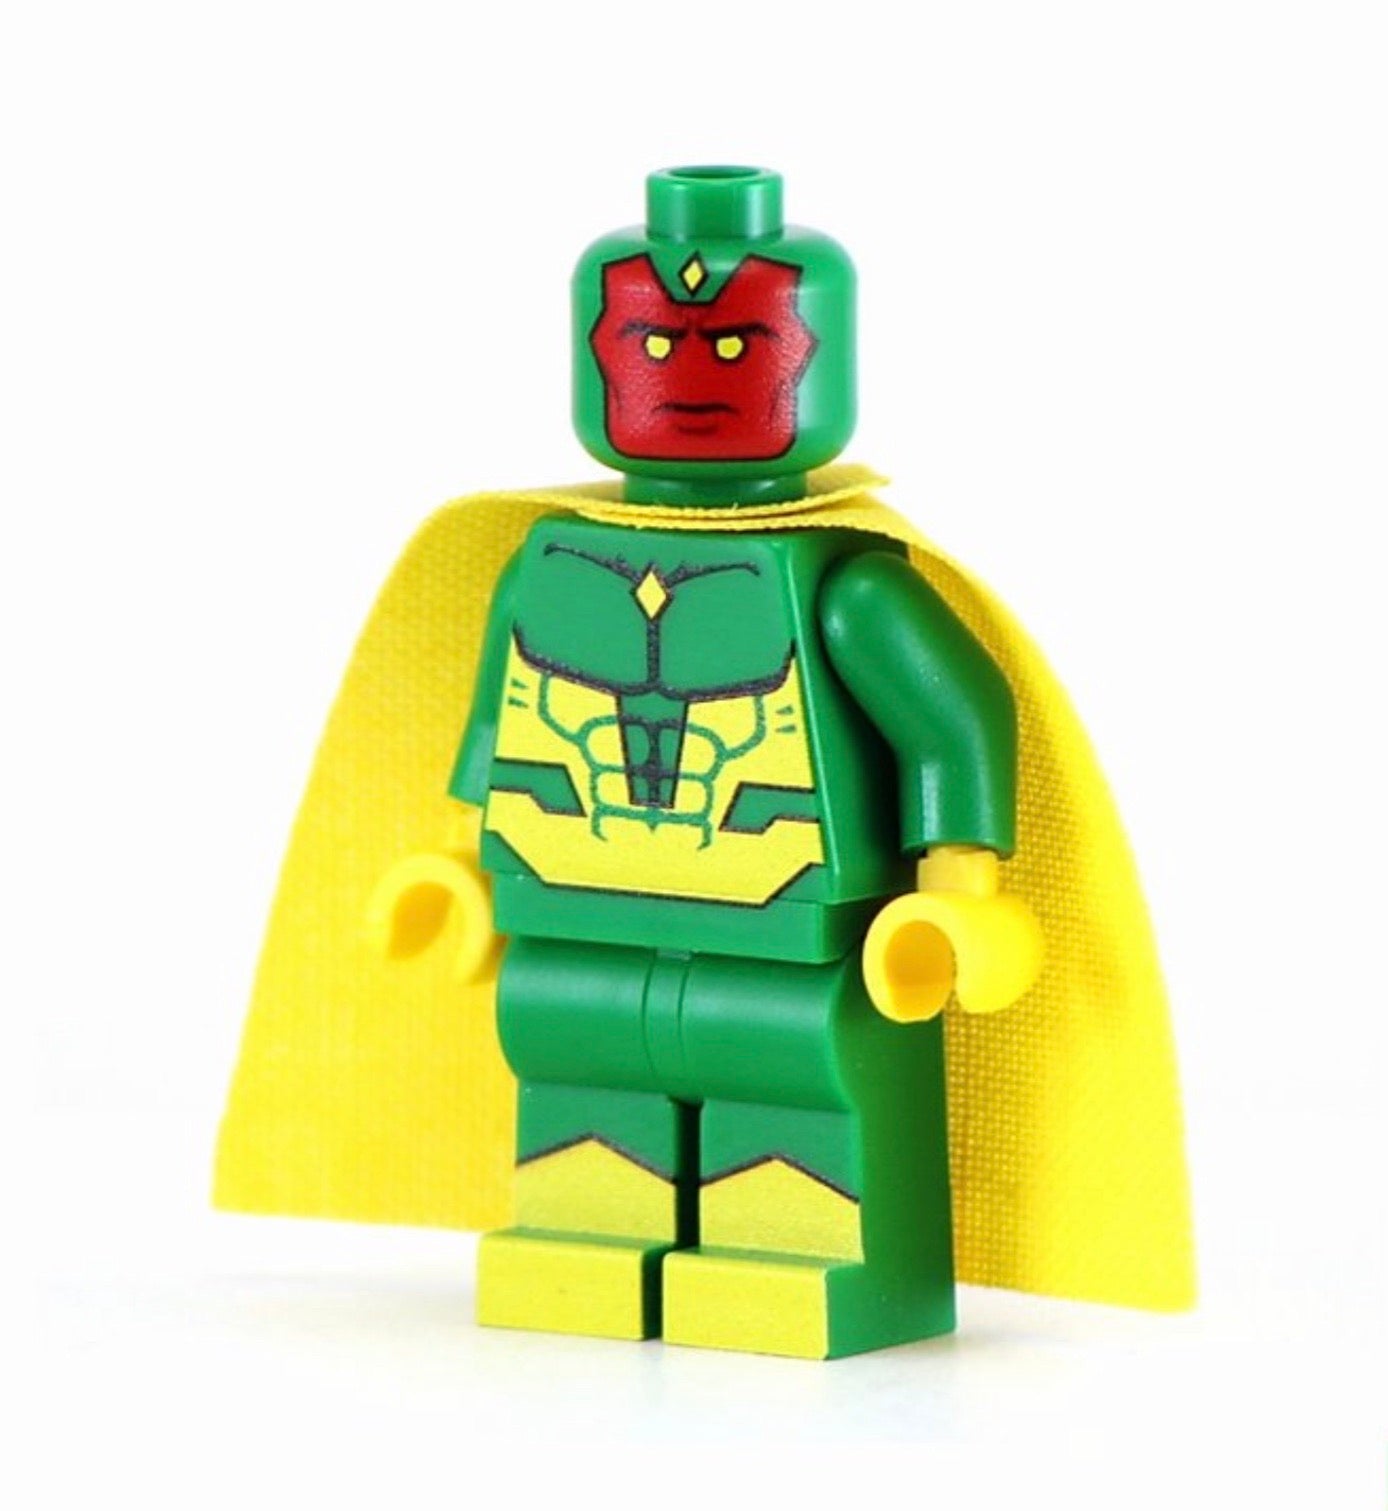 Vision Marvel Custom Printed LEGO Minifigure – United Brick Co.